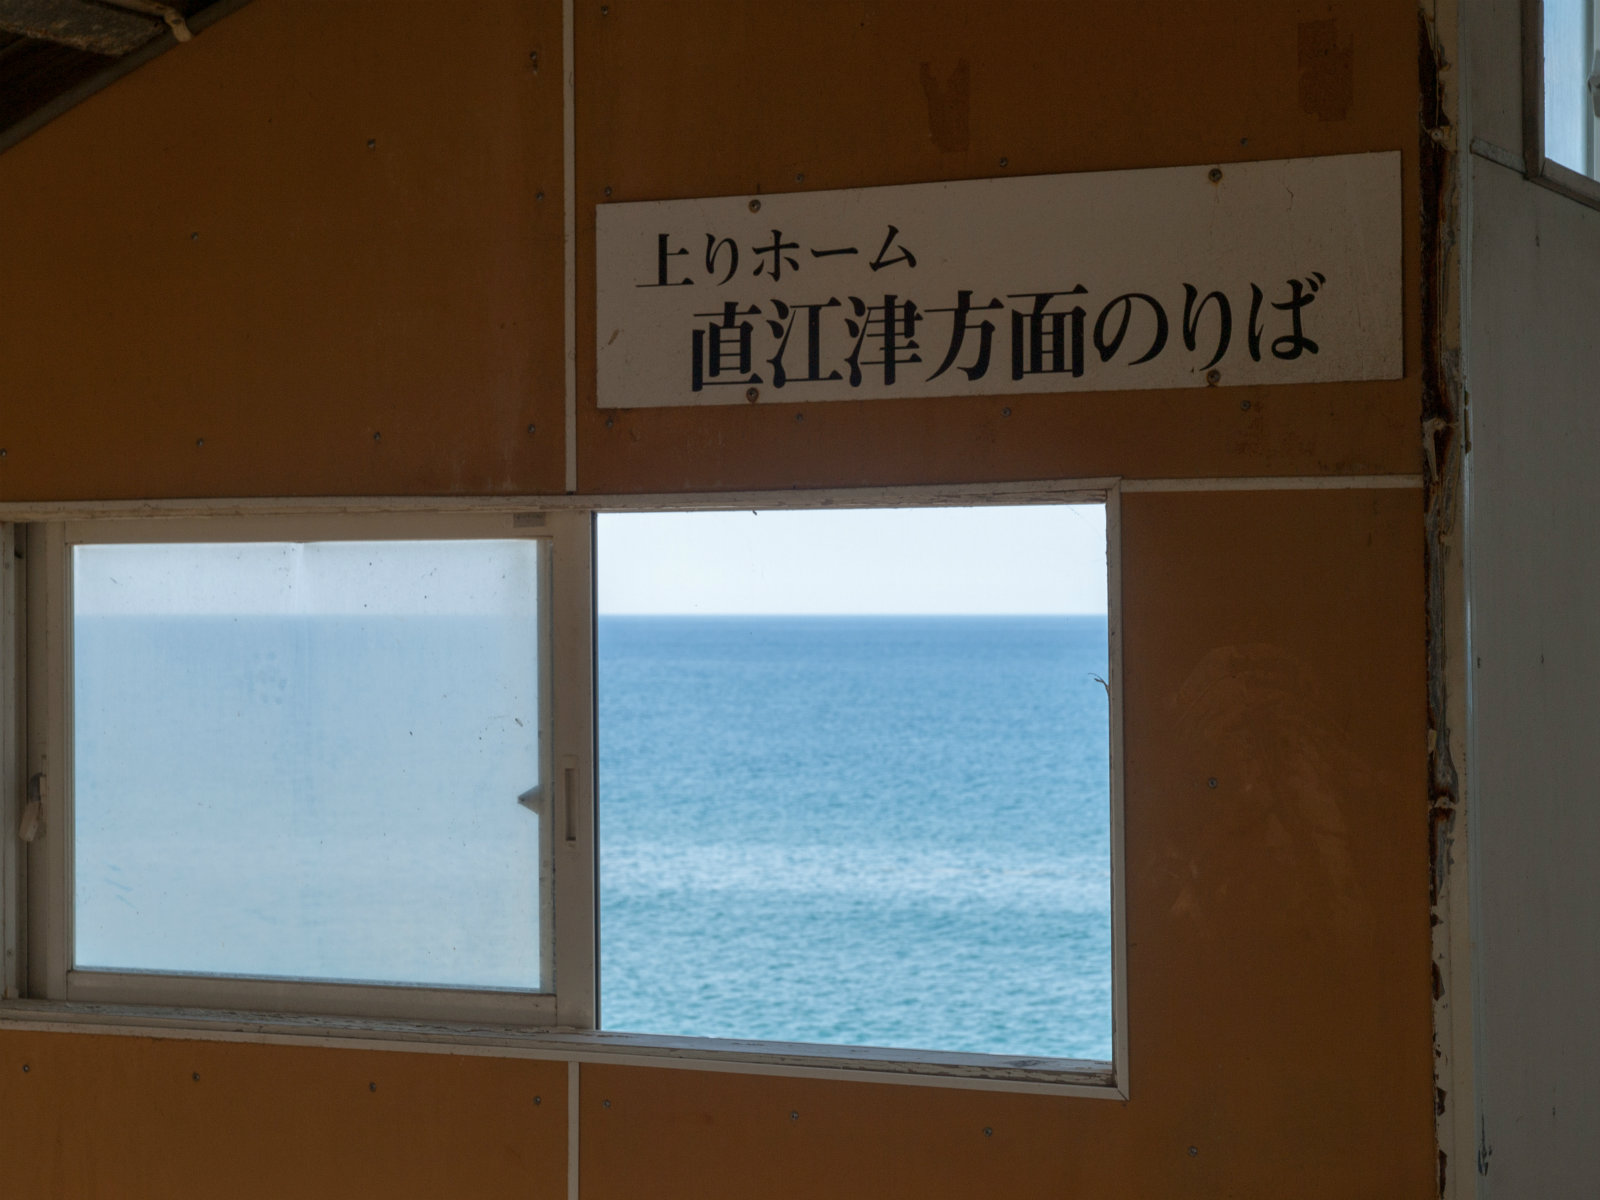 米山駅の跨線橋から見た日本海